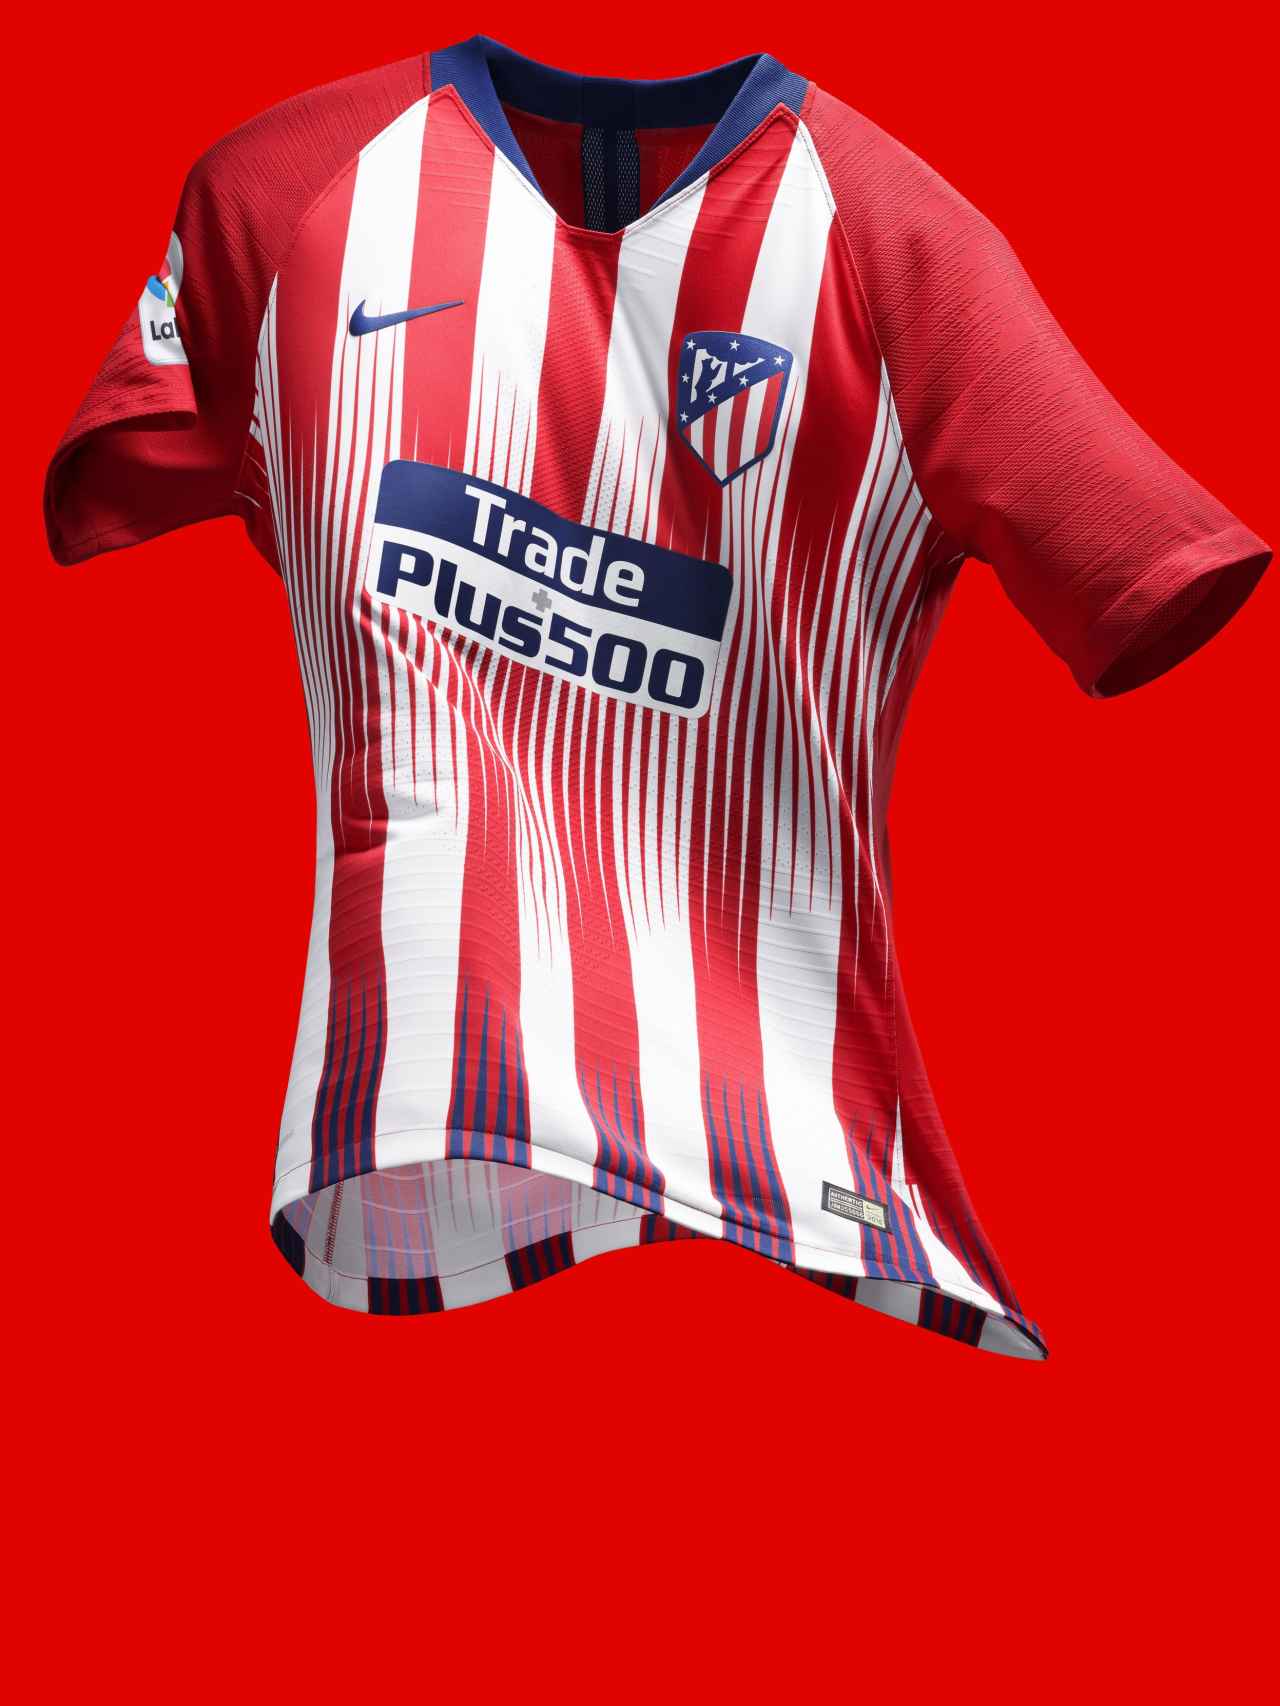 Así es la nueva camiseta del Atlético de Madrid para la temporada 2018-2019